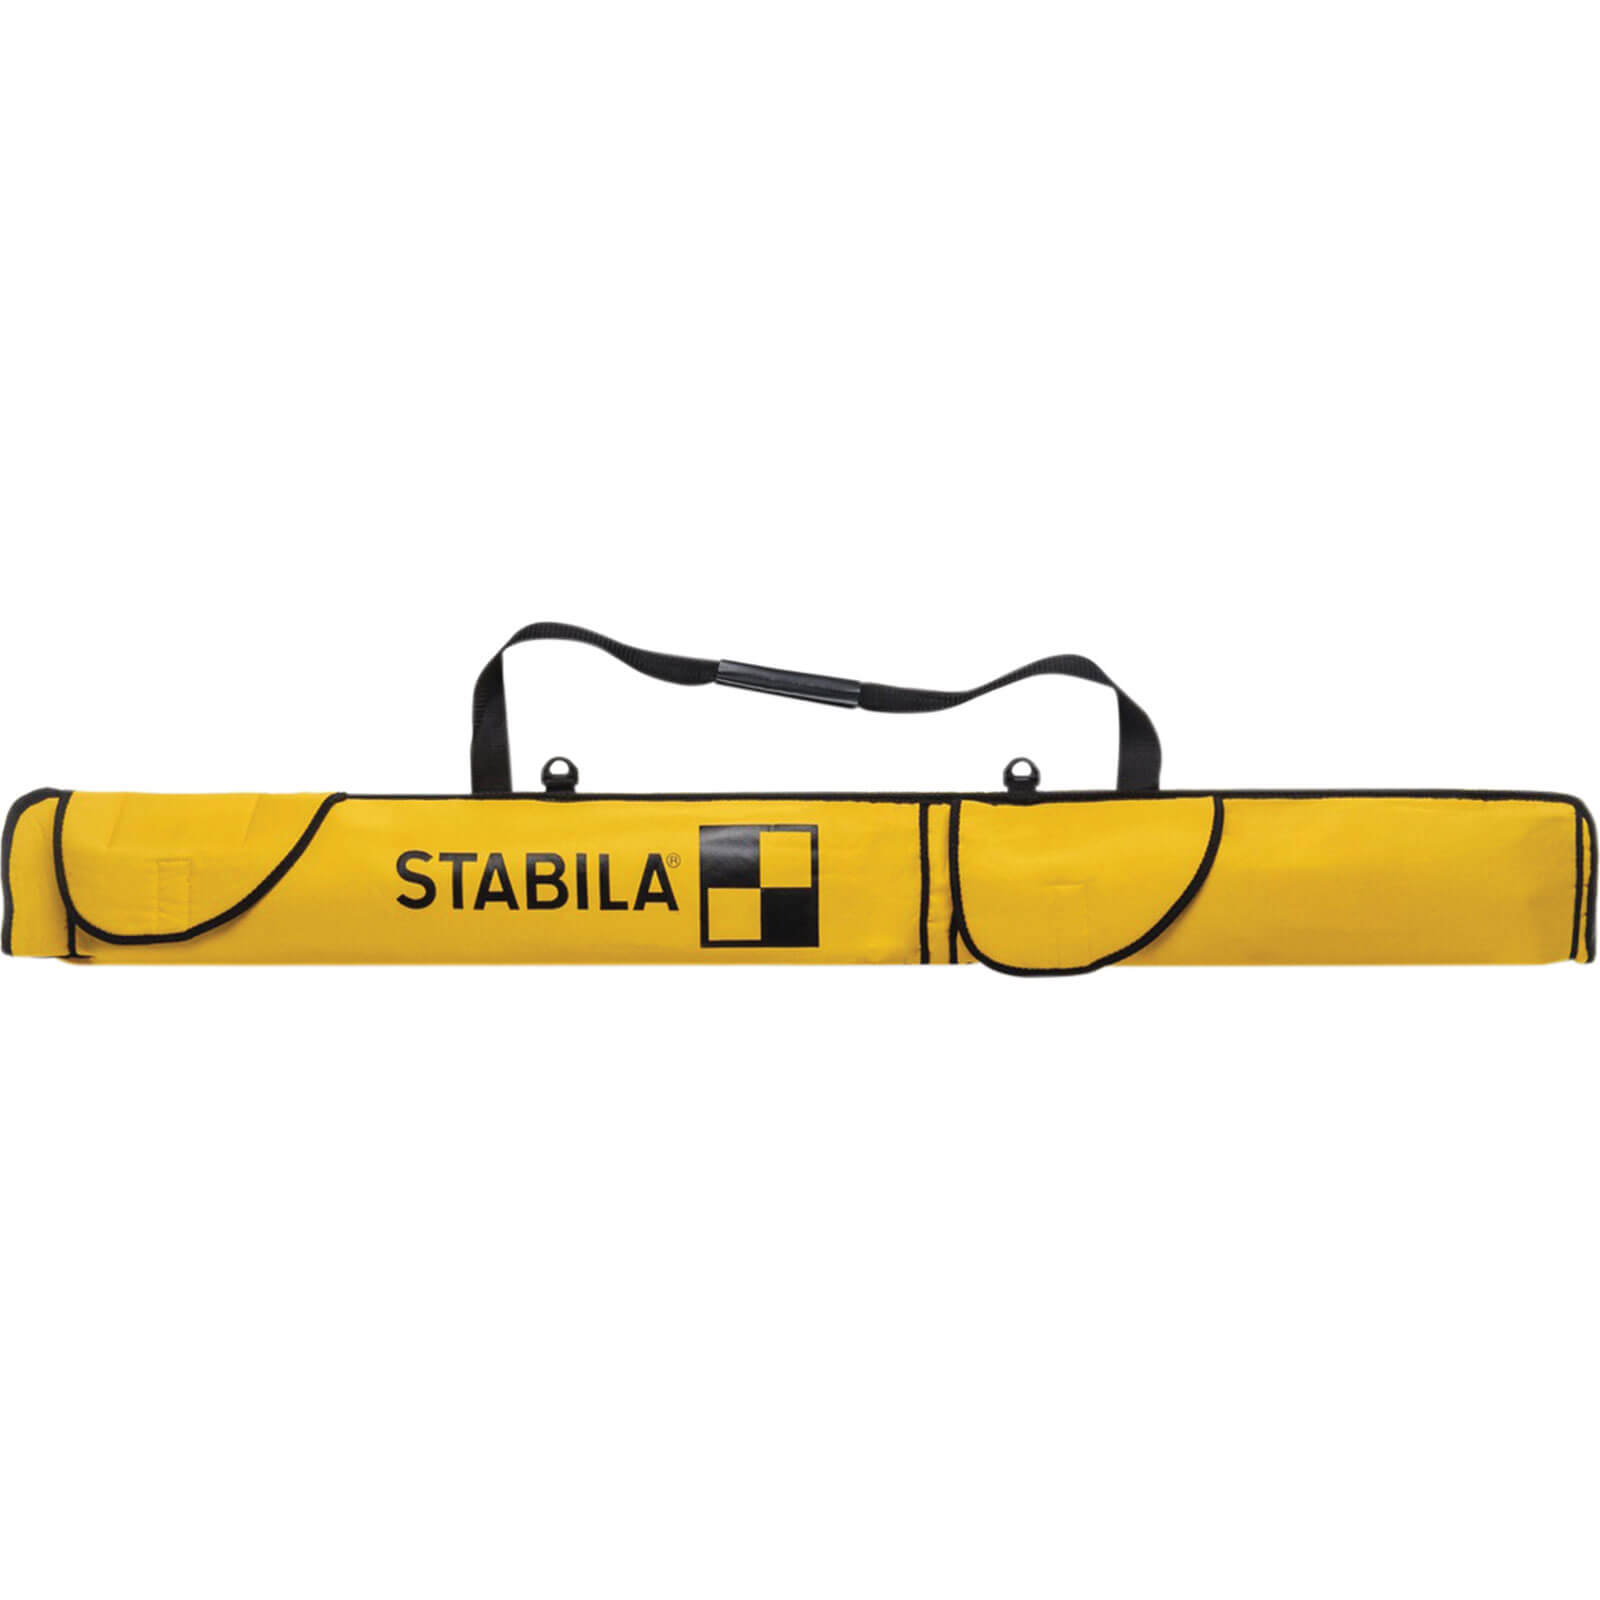 Image of Stabila Combi Spirit Level Bag 48" / 120cm